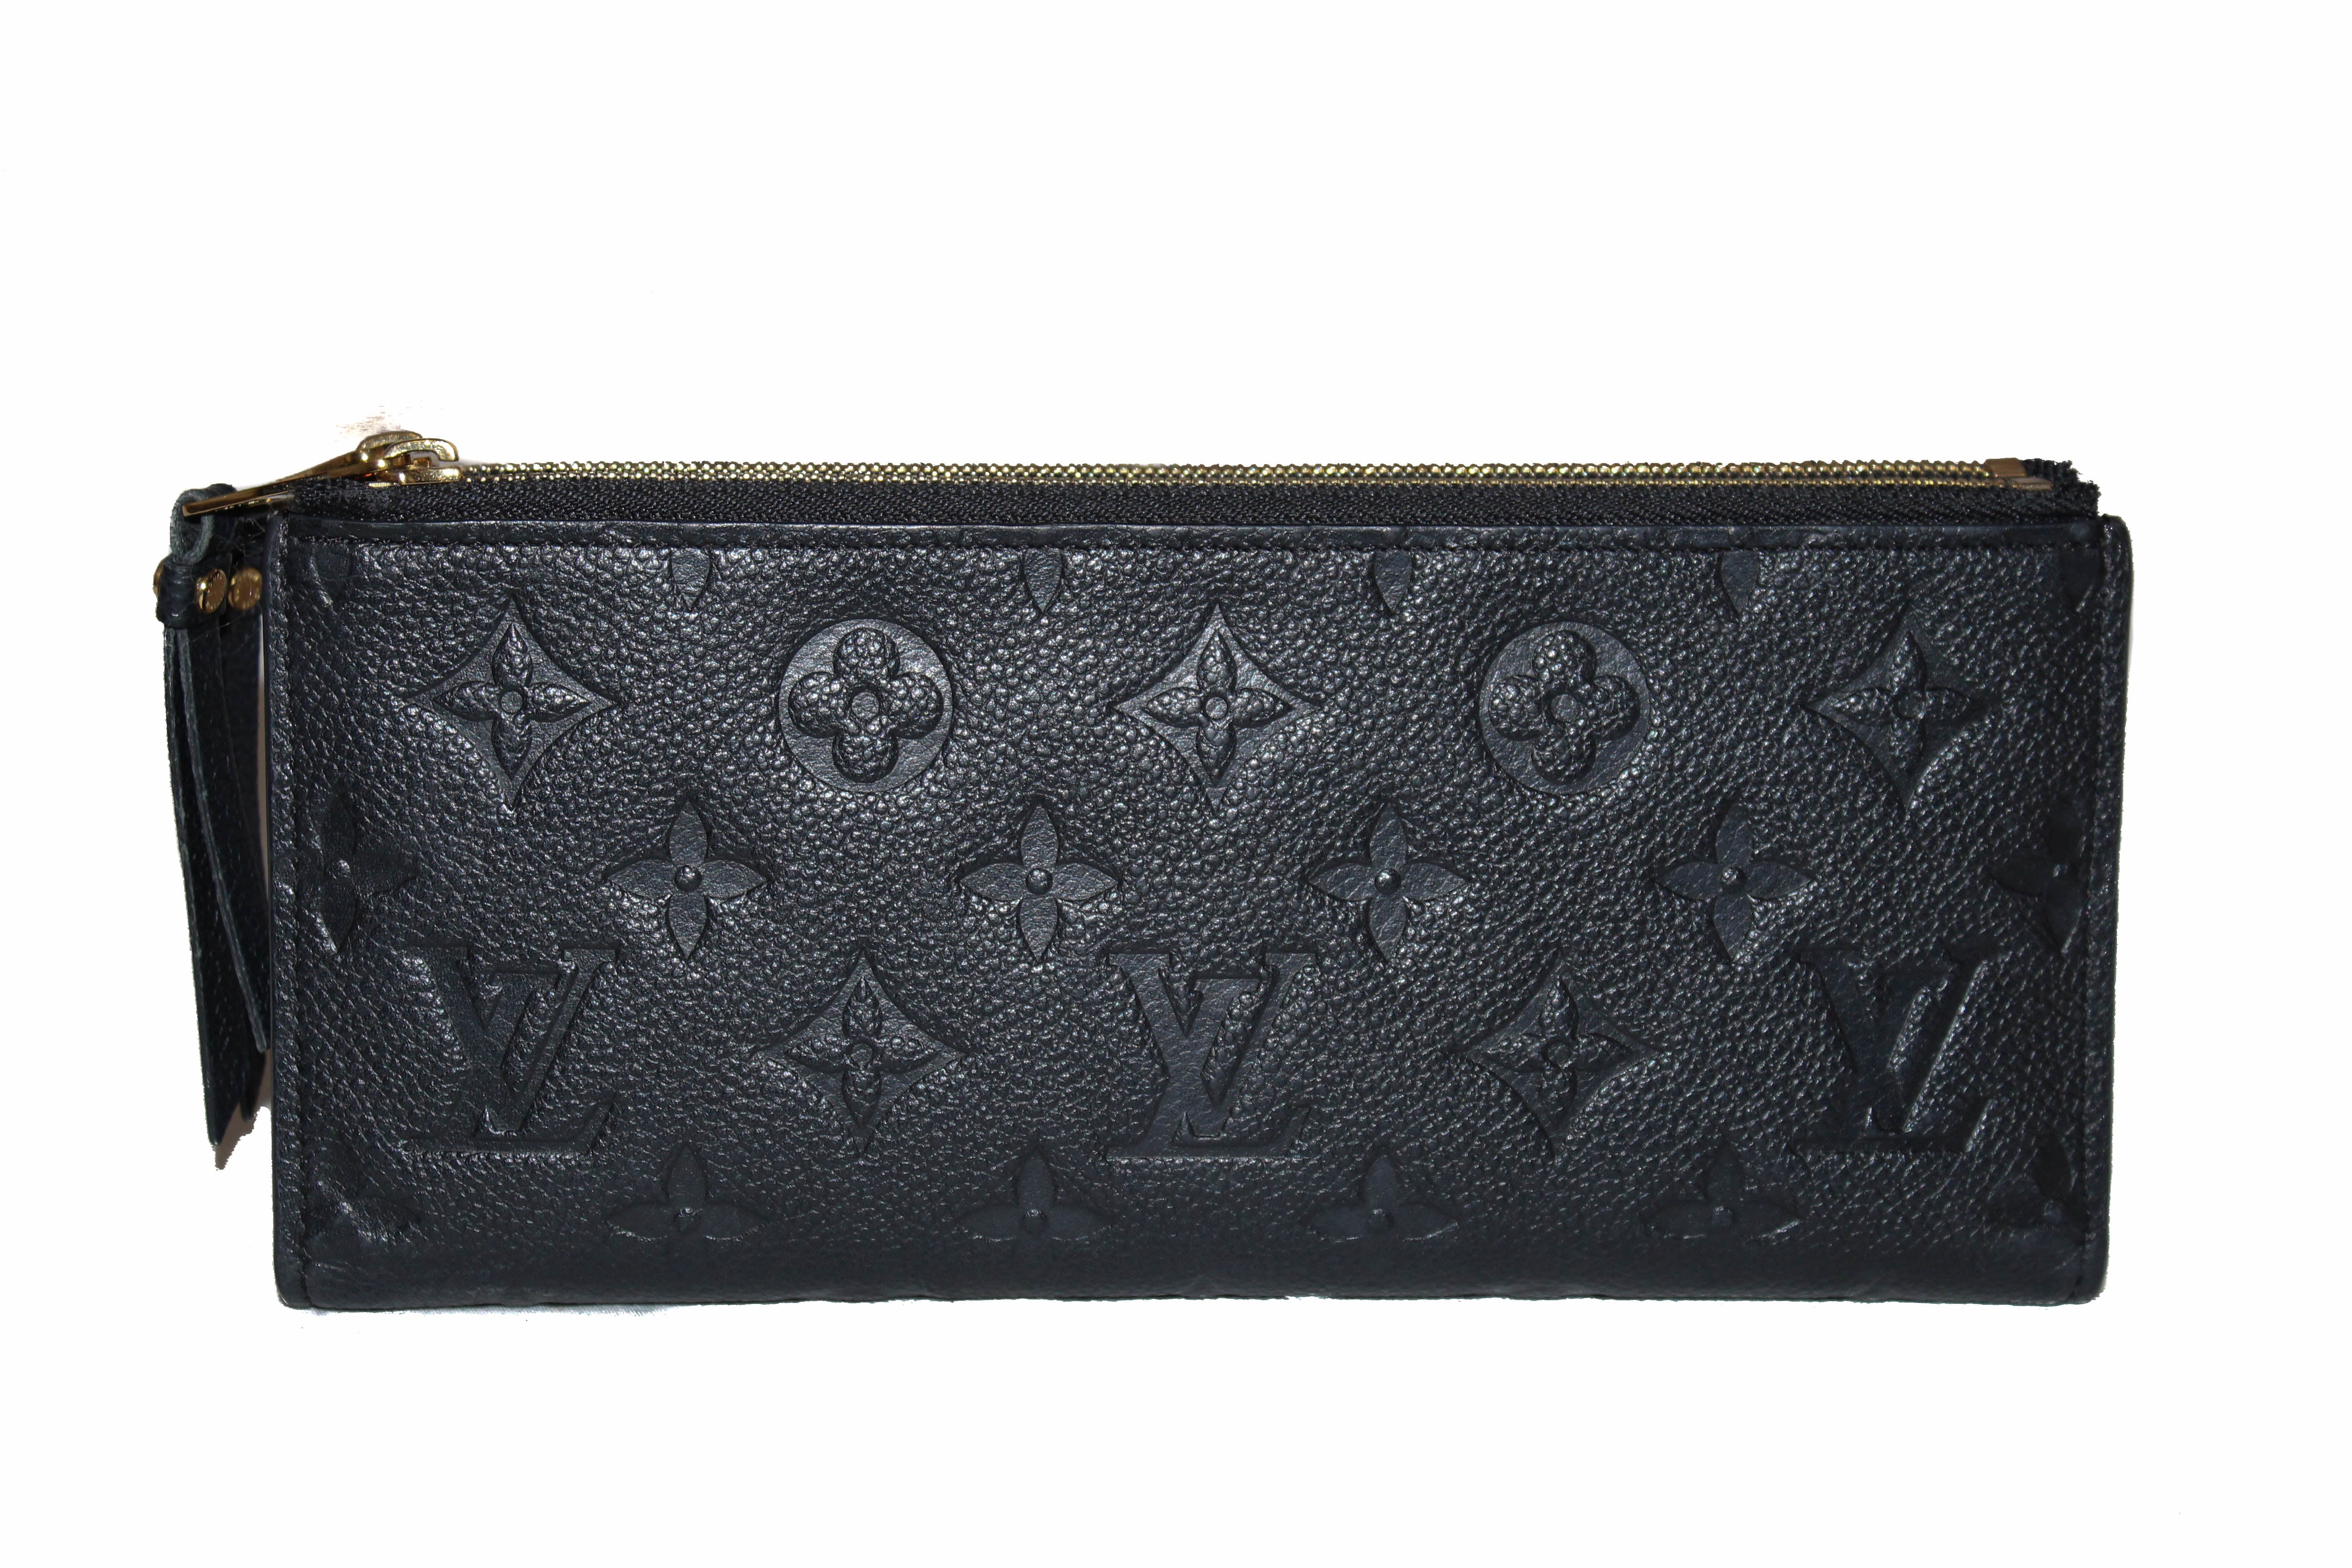 Authentic Louis Vuitton Black Monogram Empreinte Leather Adele Long Wallet